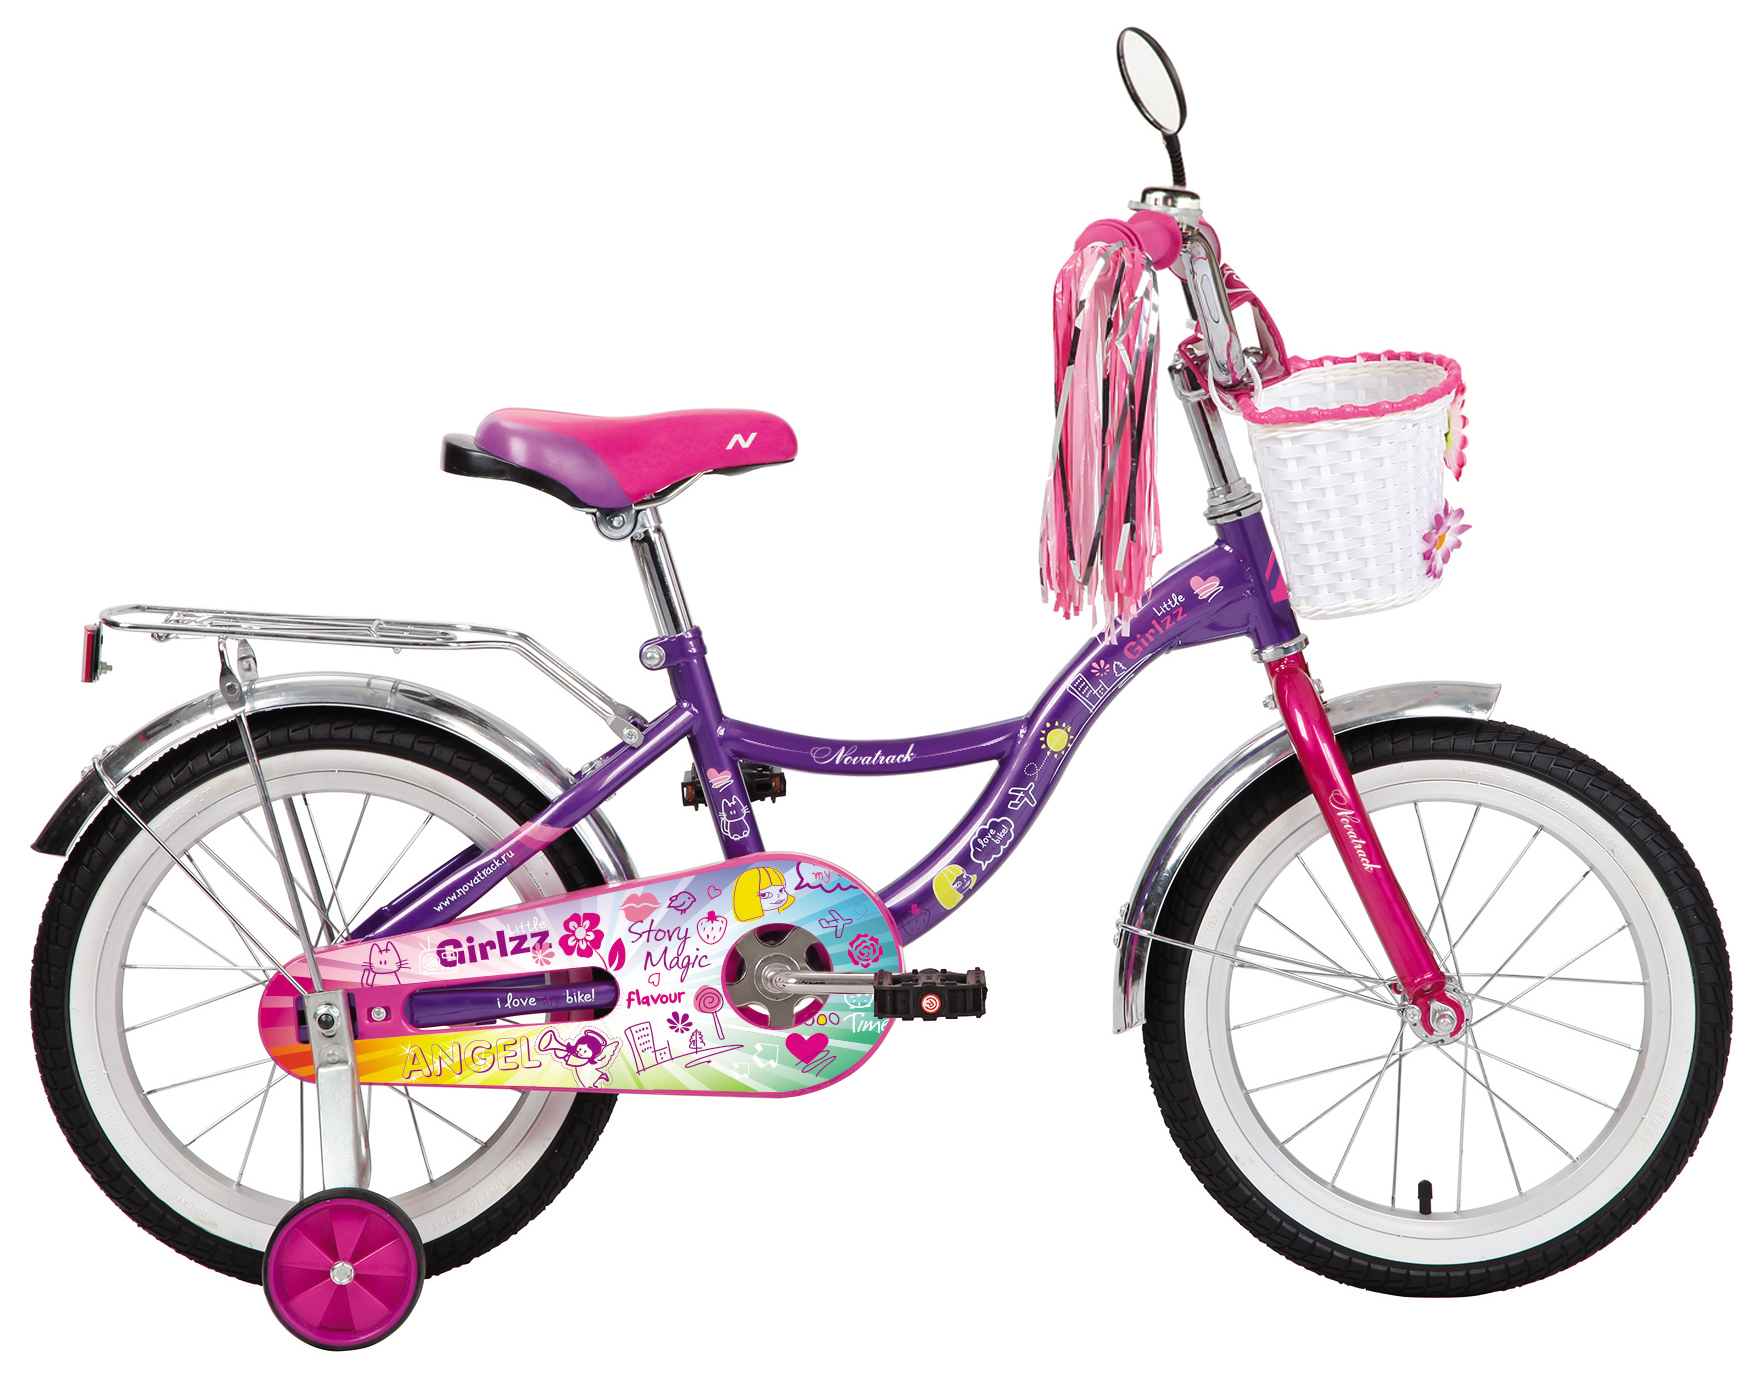  Отзывы о Детском велосипеде Novatrack Little Girlzz 16 2019